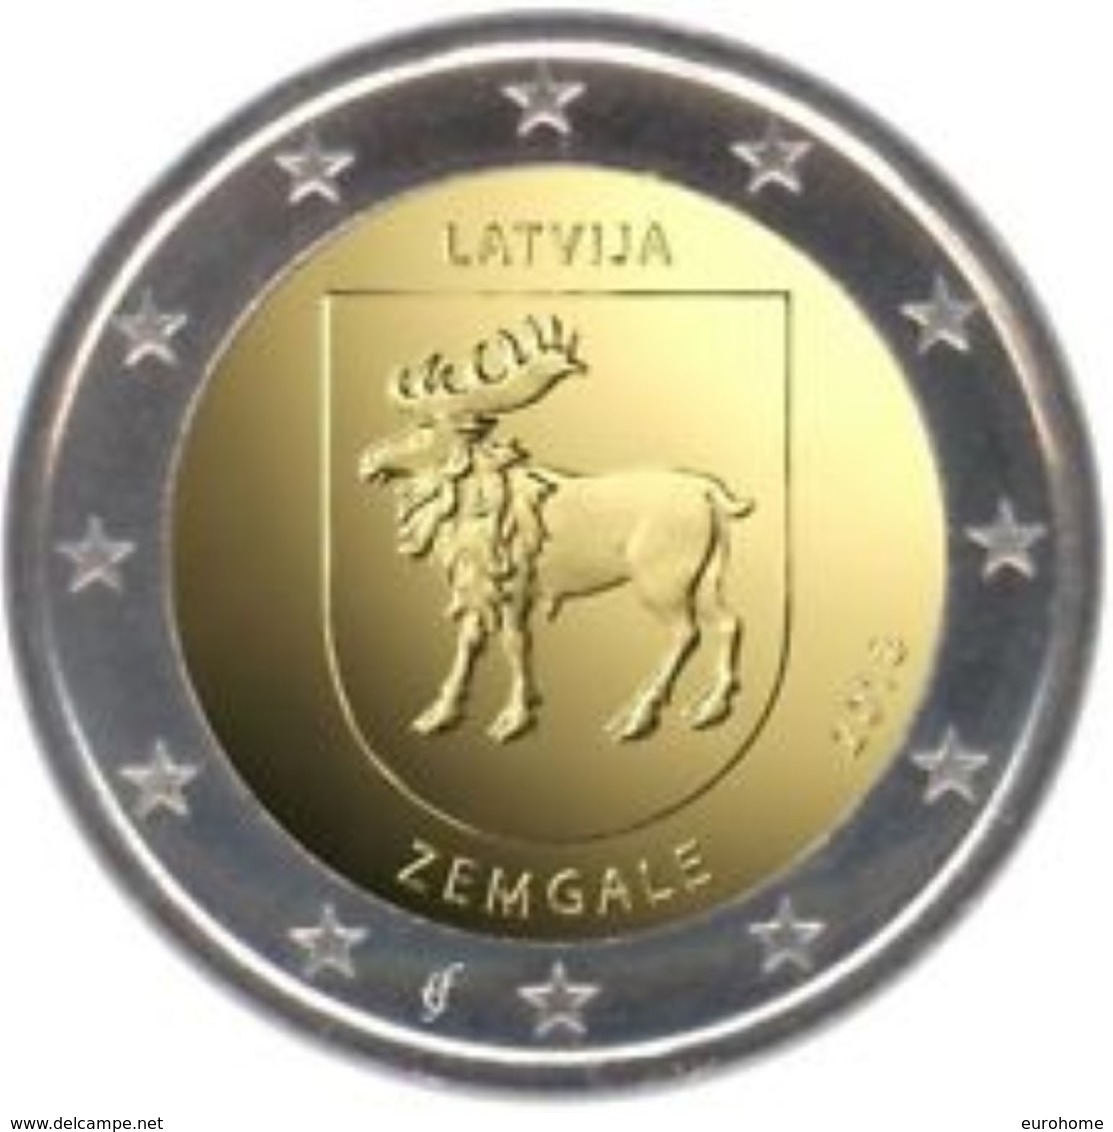 Letland-Lettonia 2018  2 Euro  Commemo  Regio Zemgale   UNC Uit De Rol  UNC Du Rouleaux  !! Leverbaar - Livrable !! - Lettonie